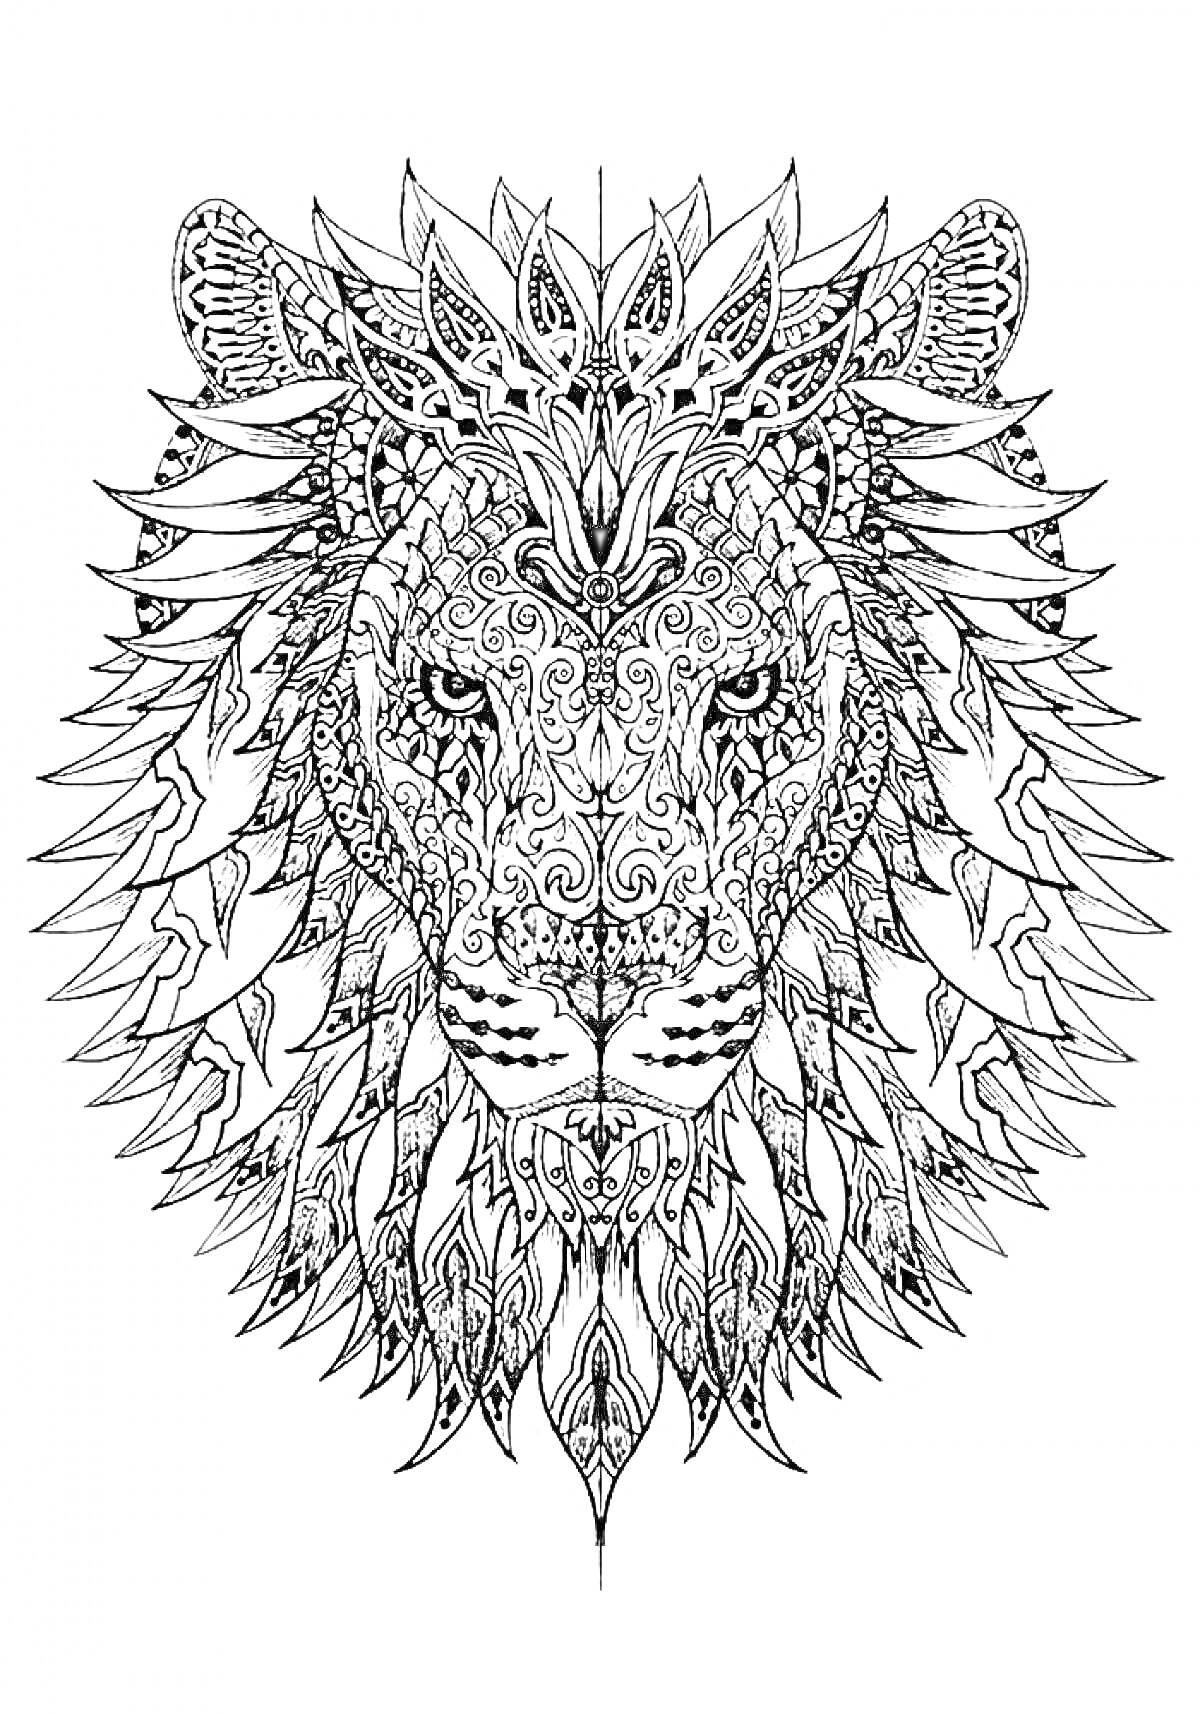 Раскраска Рисунок головы льва с декоративными узорами и орнаментами